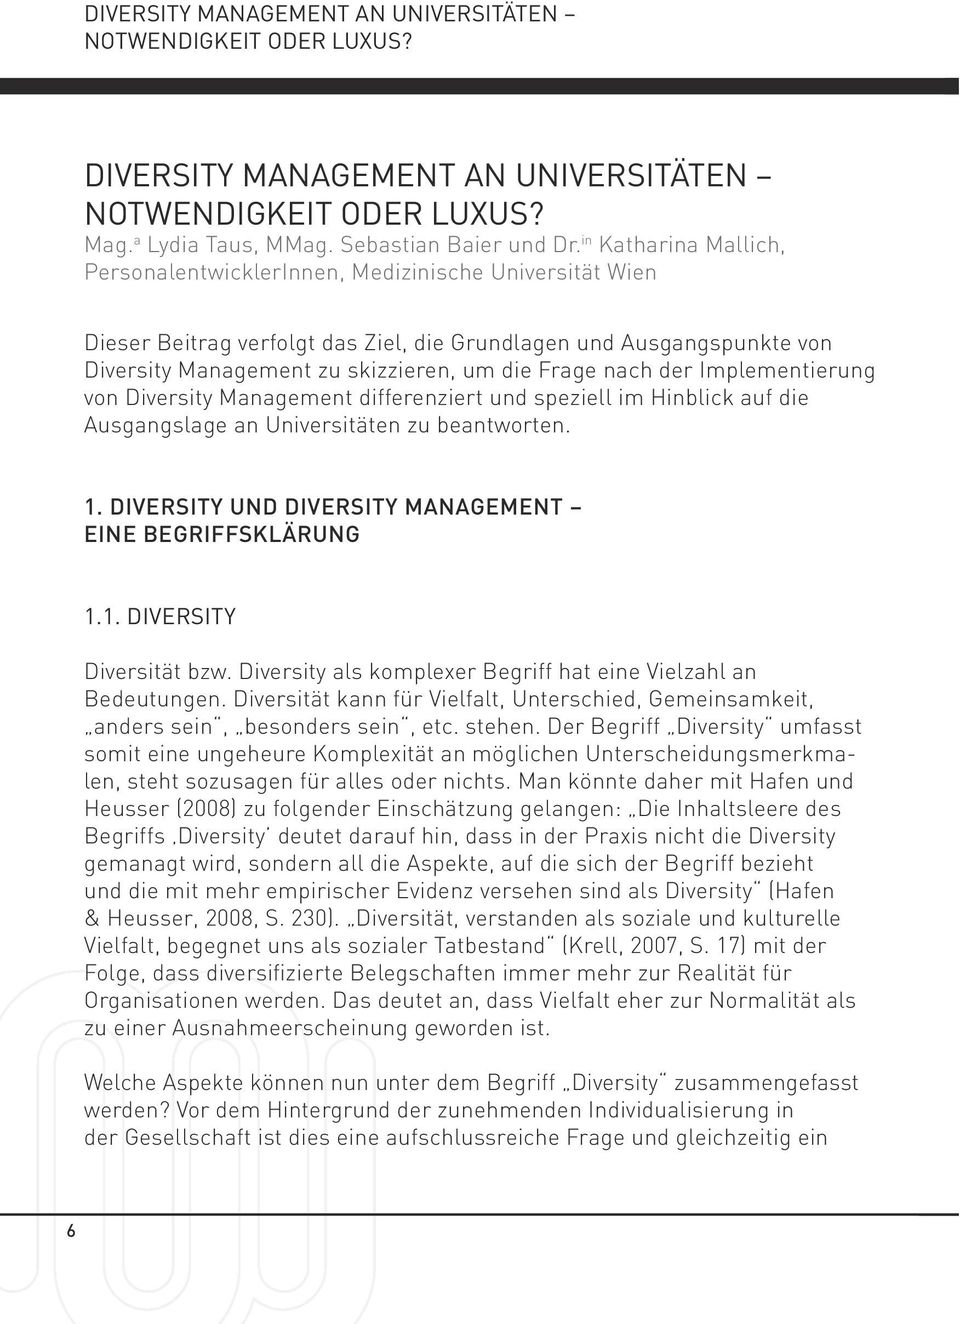 nach der Implementierung von Diversity Management differenziert und speziell im Hinblick auf die Ausgangslage an Universitäten zu beantworten. 1.